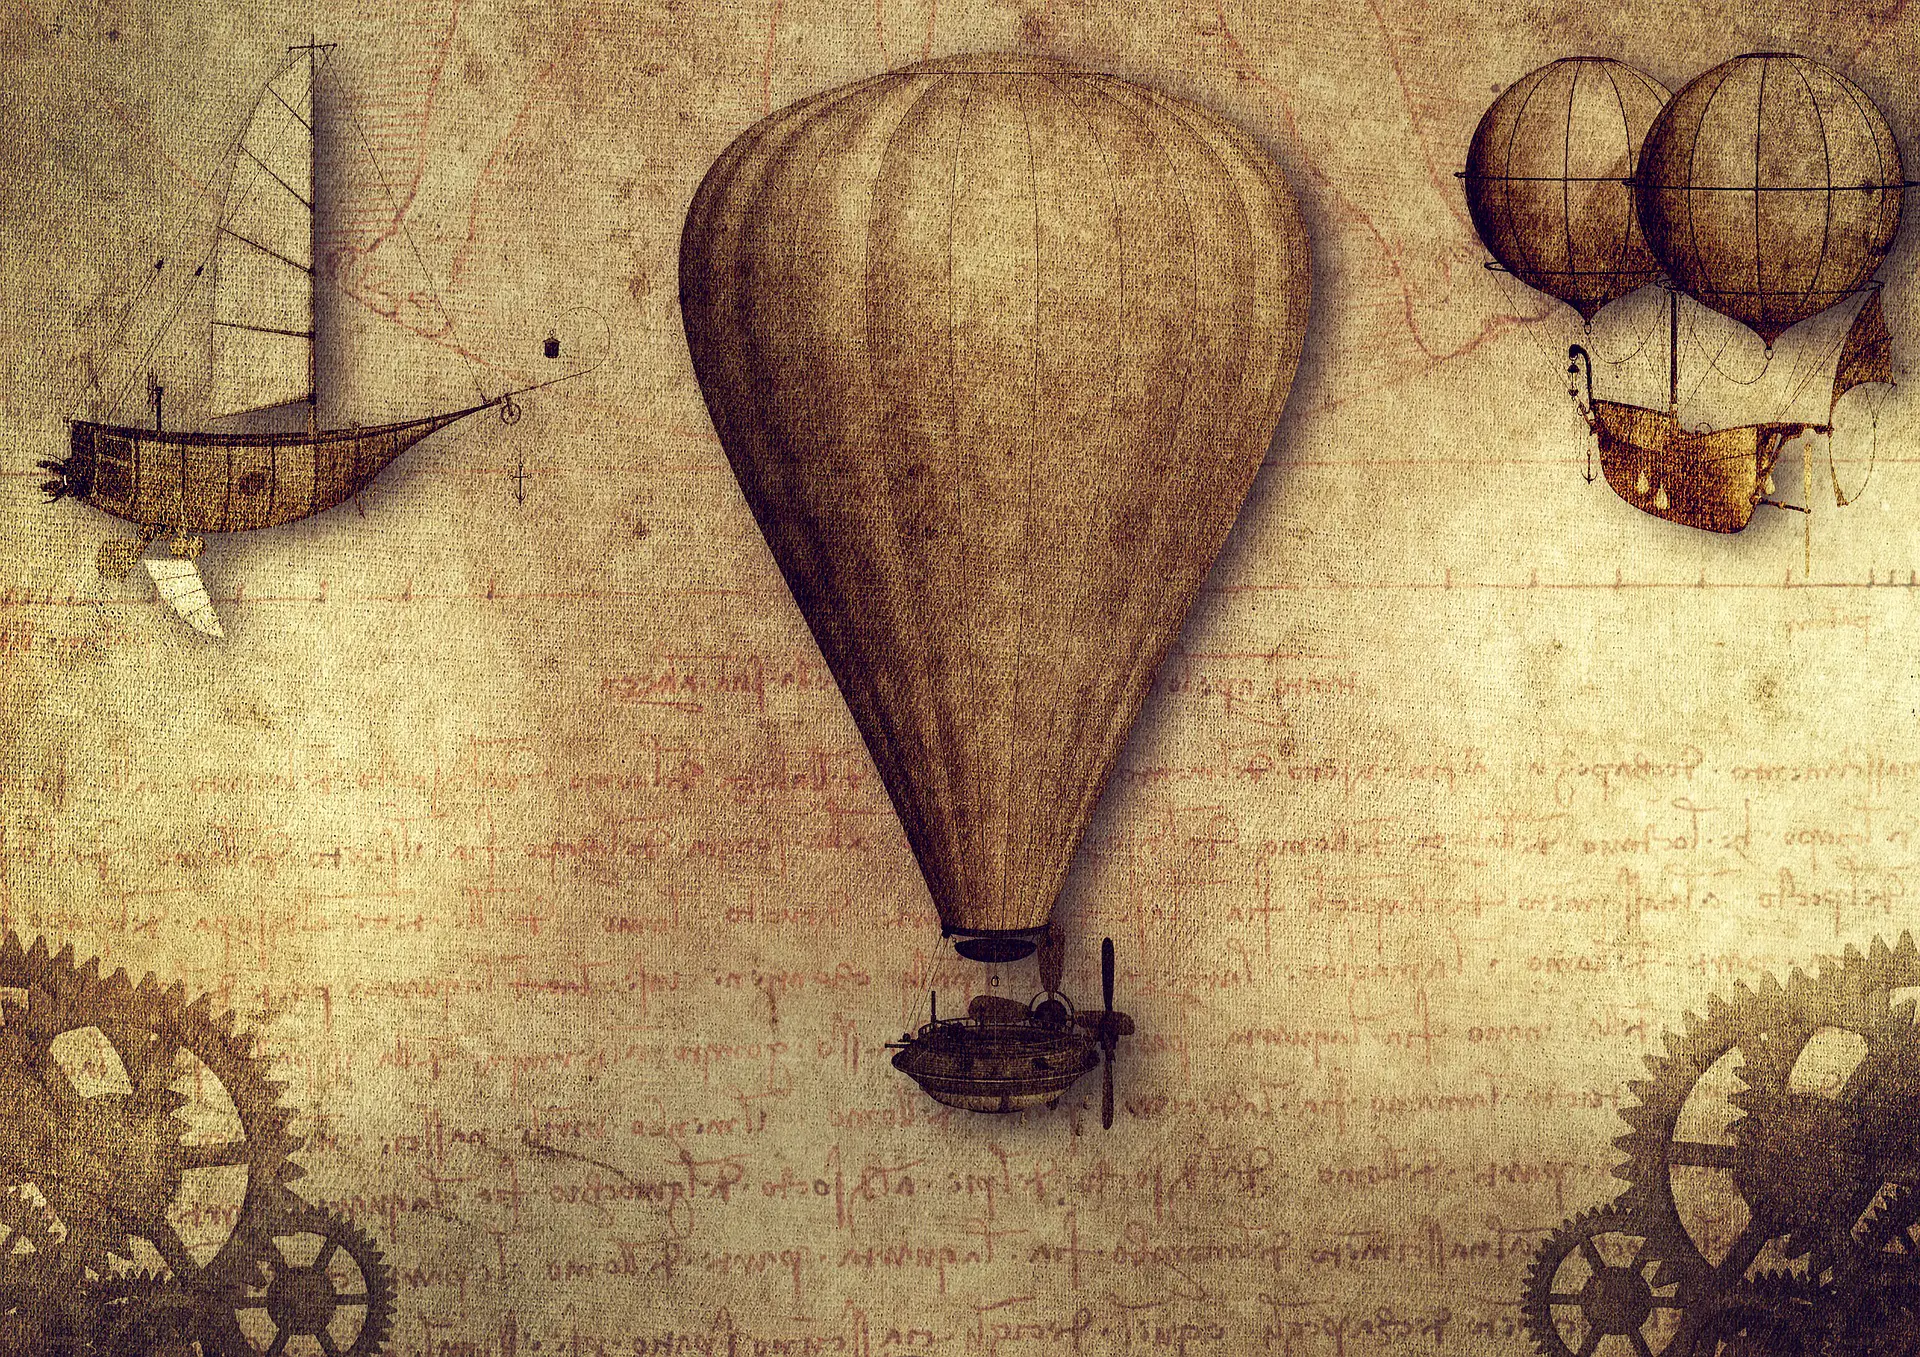 Eine Zeichnung von Leonardo da Vinci mit mehreren Entwürfen für Fluggeräte